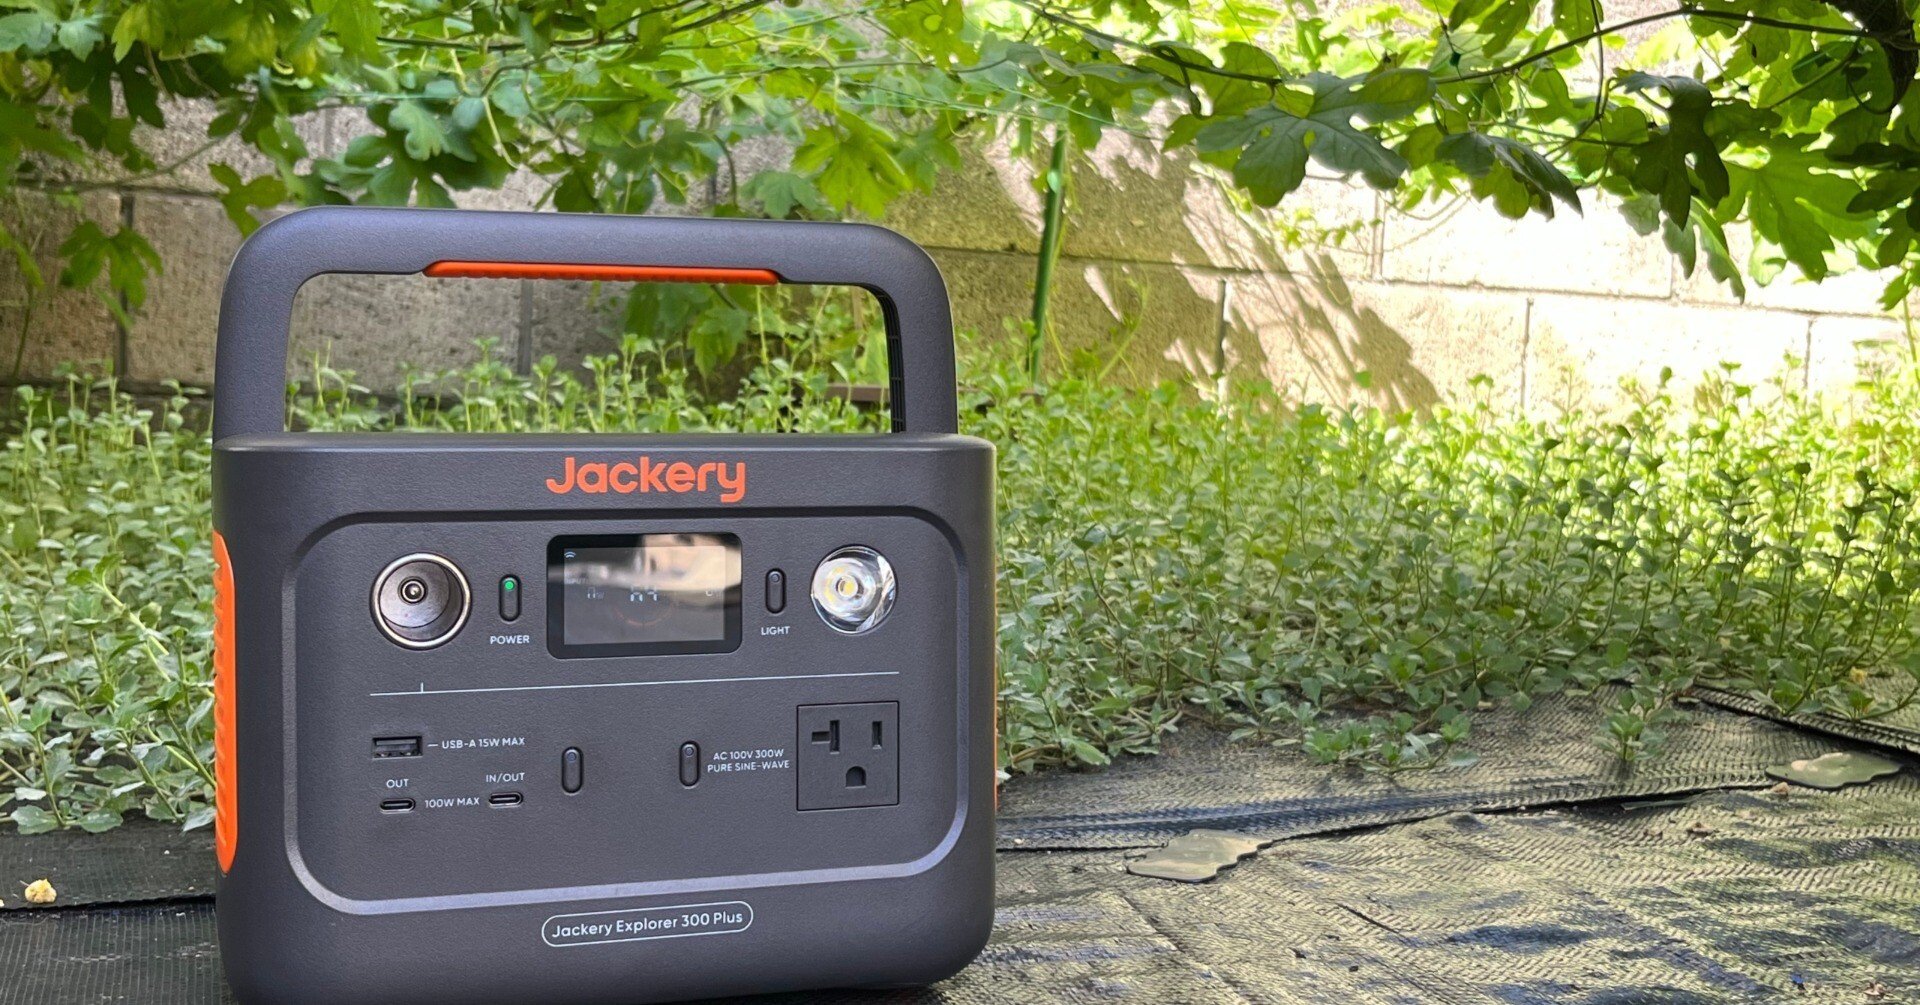 Jackery Solar Generator 300 Plus 40Wミニ ポータブル電源 ソーラー